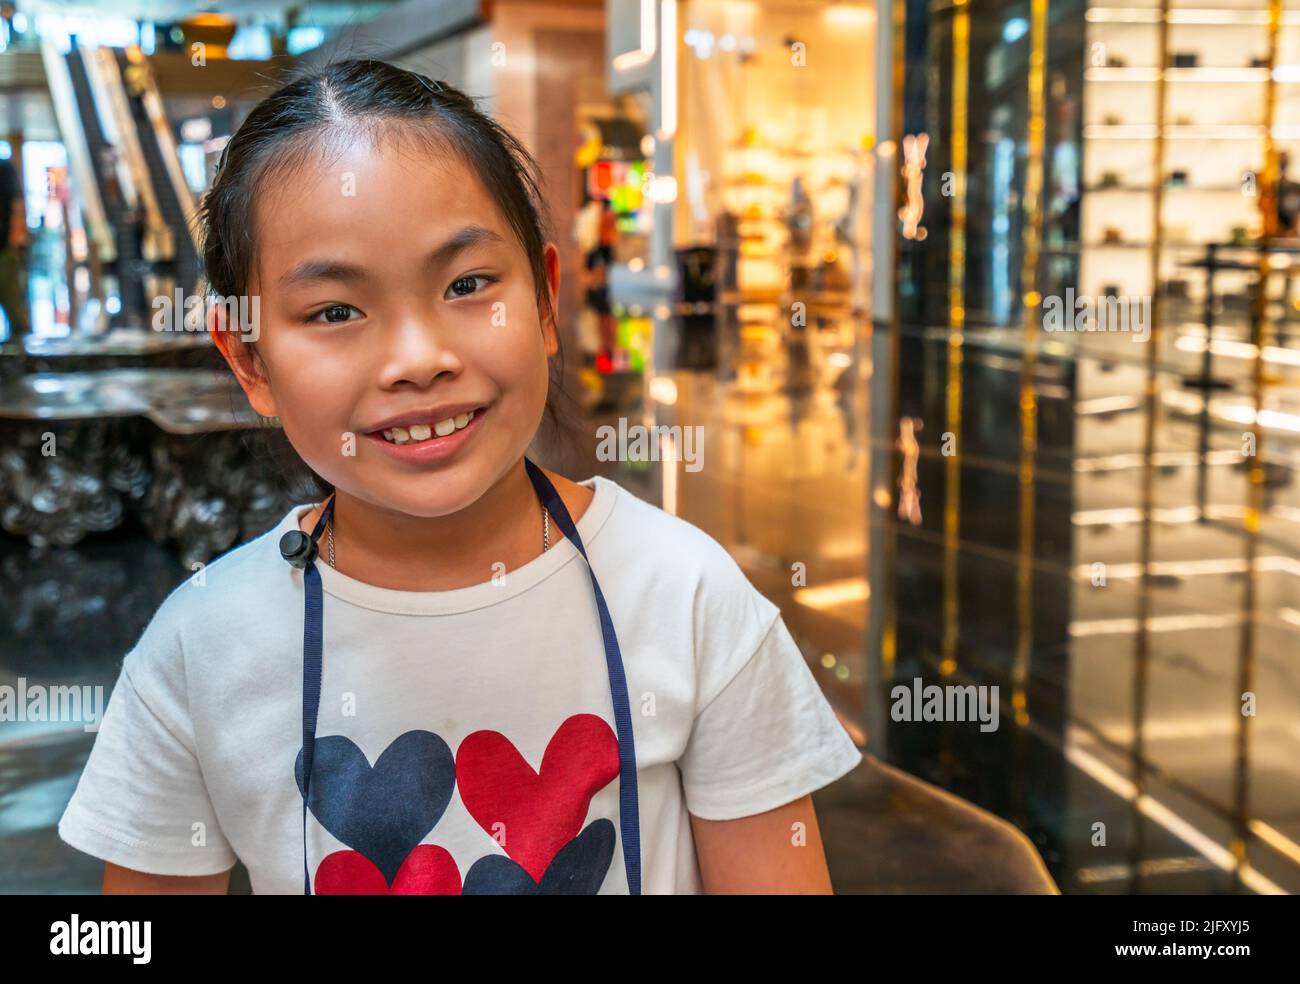 Porträt von niedlichen asiatischen Mädchen in einem Einkaufszentrum, lächelndes Gesicht, Nahaufnahme Porträt des Kindes, Augen Blick auf die Kamera, verschwommener Hintergrund des Einkaufszentrums Stockfoto